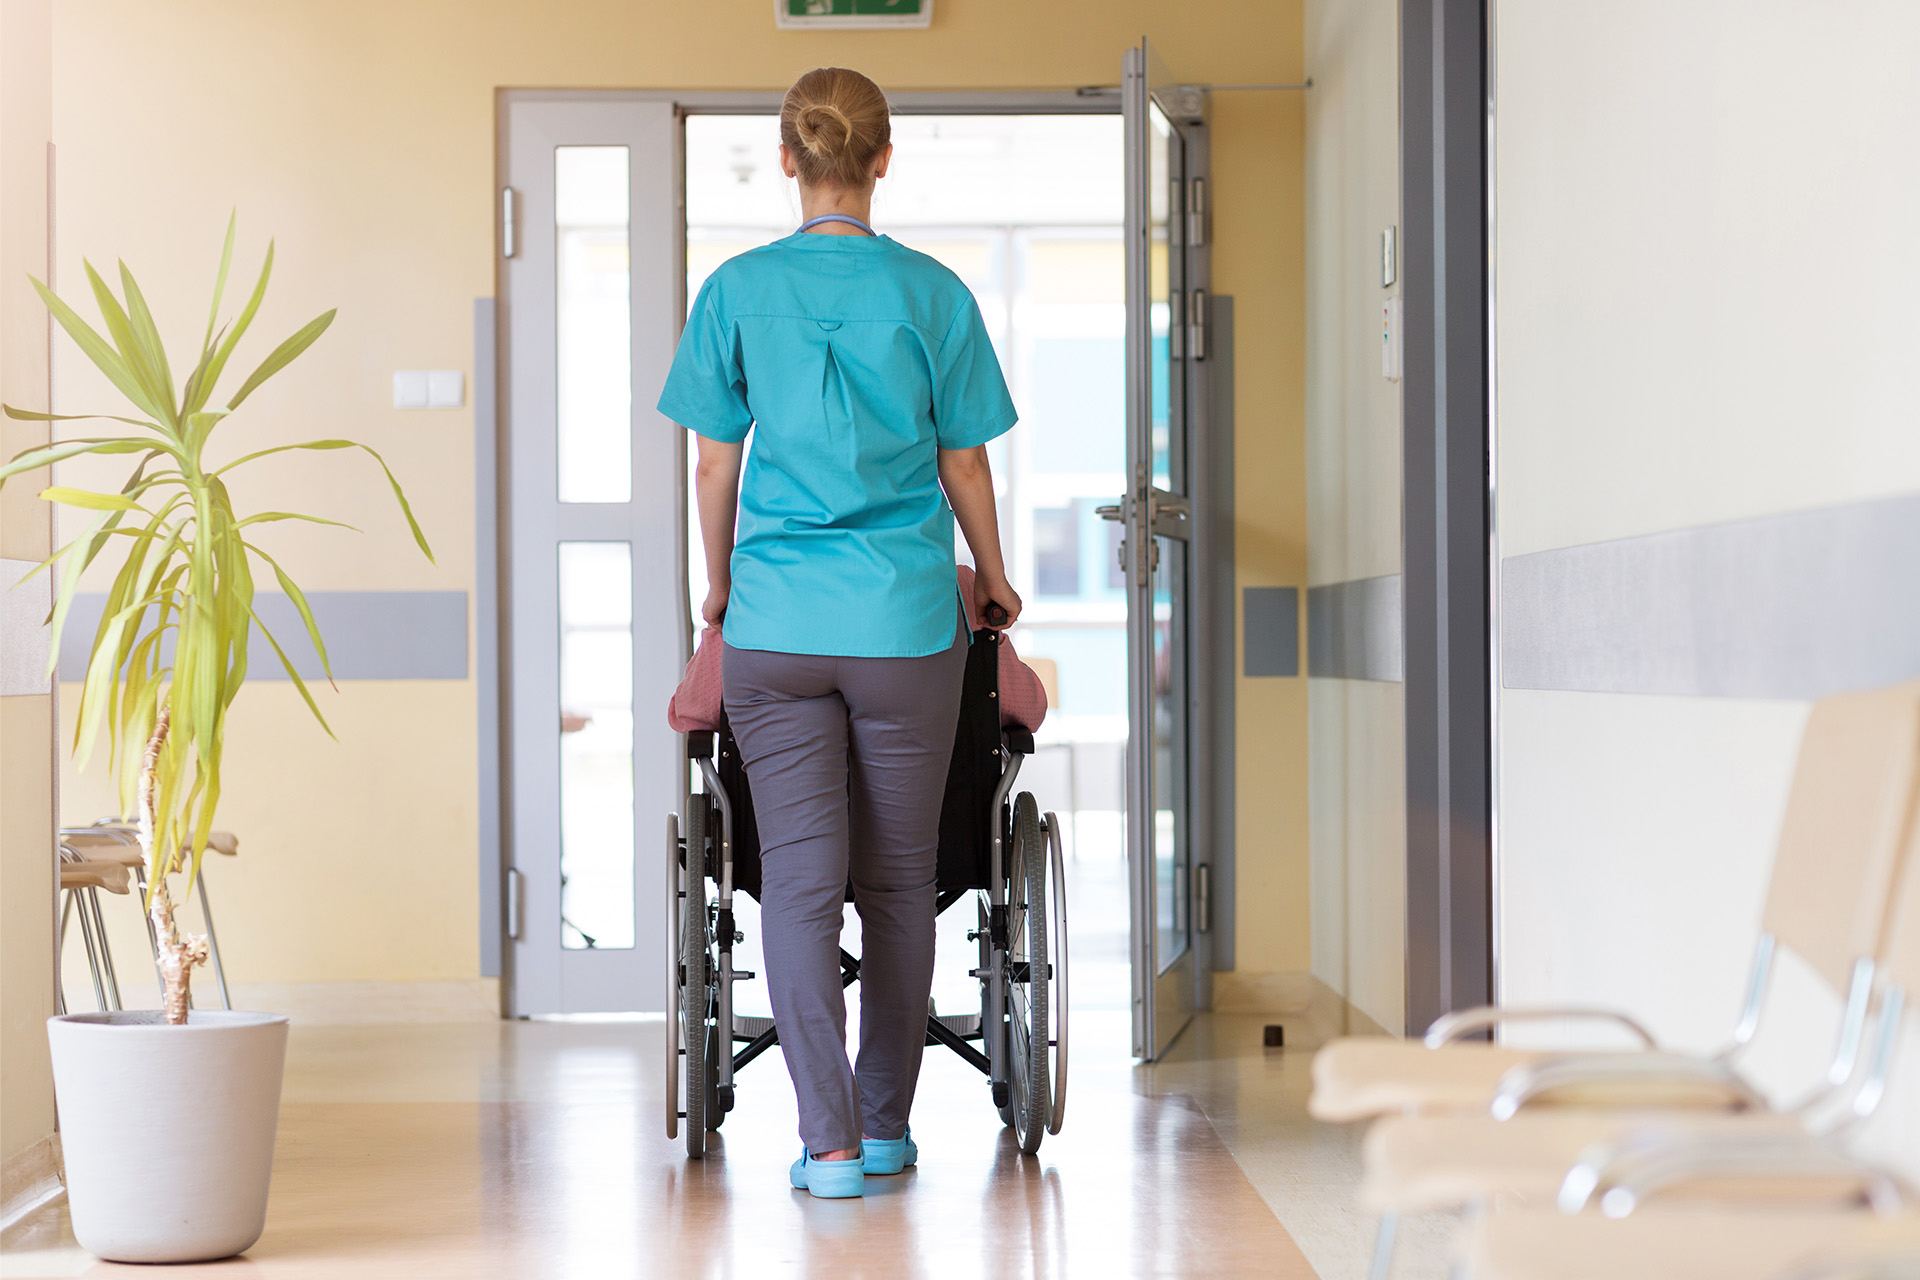 Ausbildungsabbrueche in der Pflege verhindern: Krankenschwester in blaugrünem Kasack schiebt eine Frau im Rollstuhl durch einen Krankenhausflur.